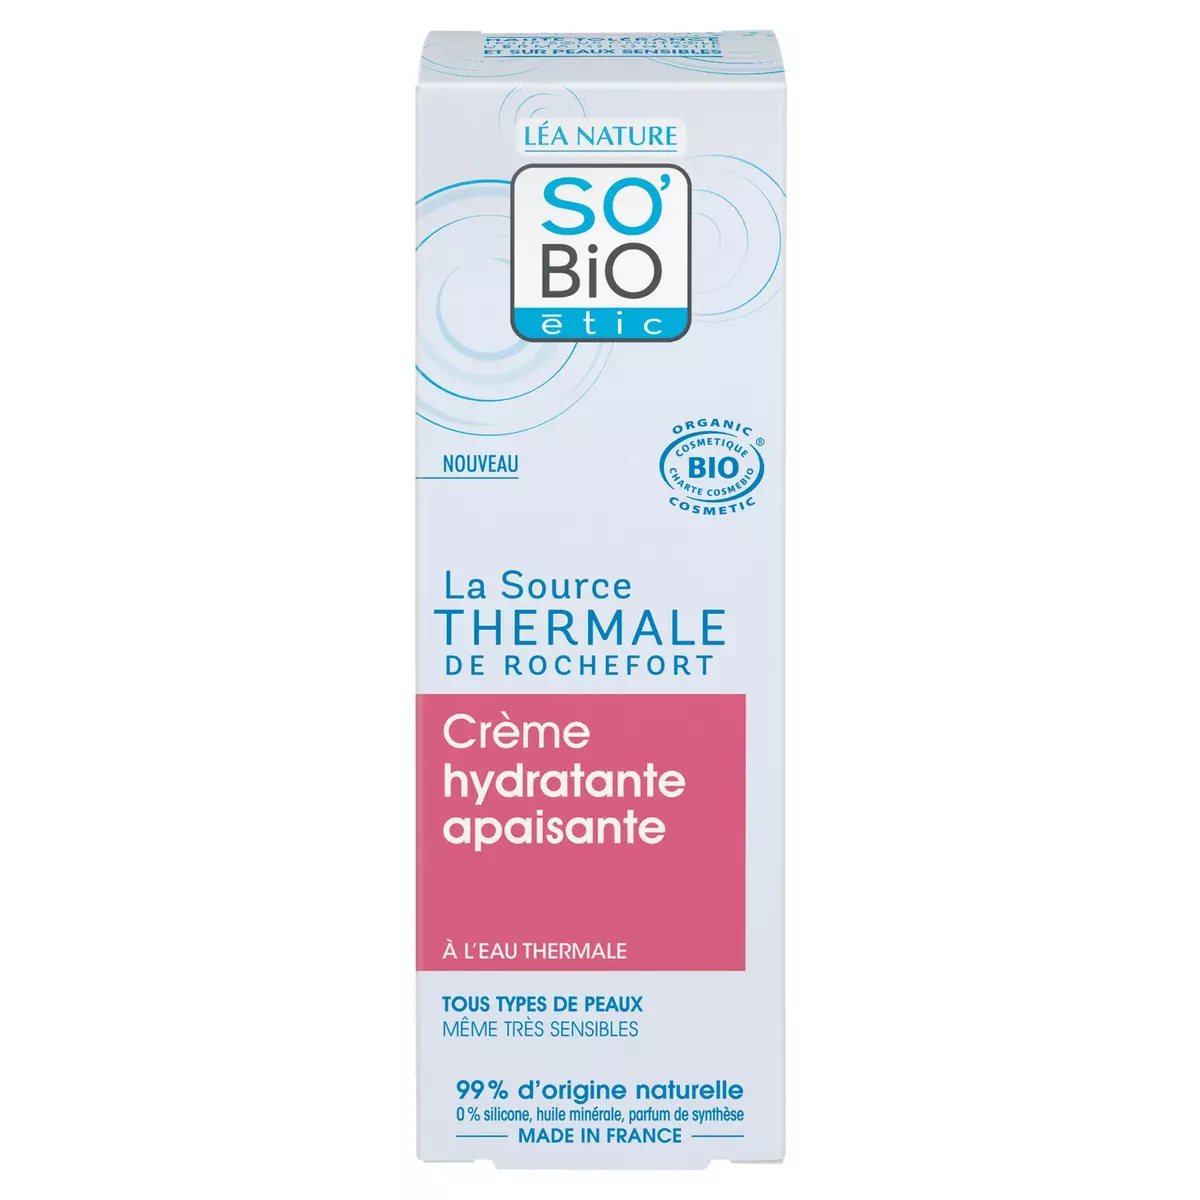 SO BIO ETIC Crème hydratante apaisante bio à l'eau thermale tous types de peaux 50ml